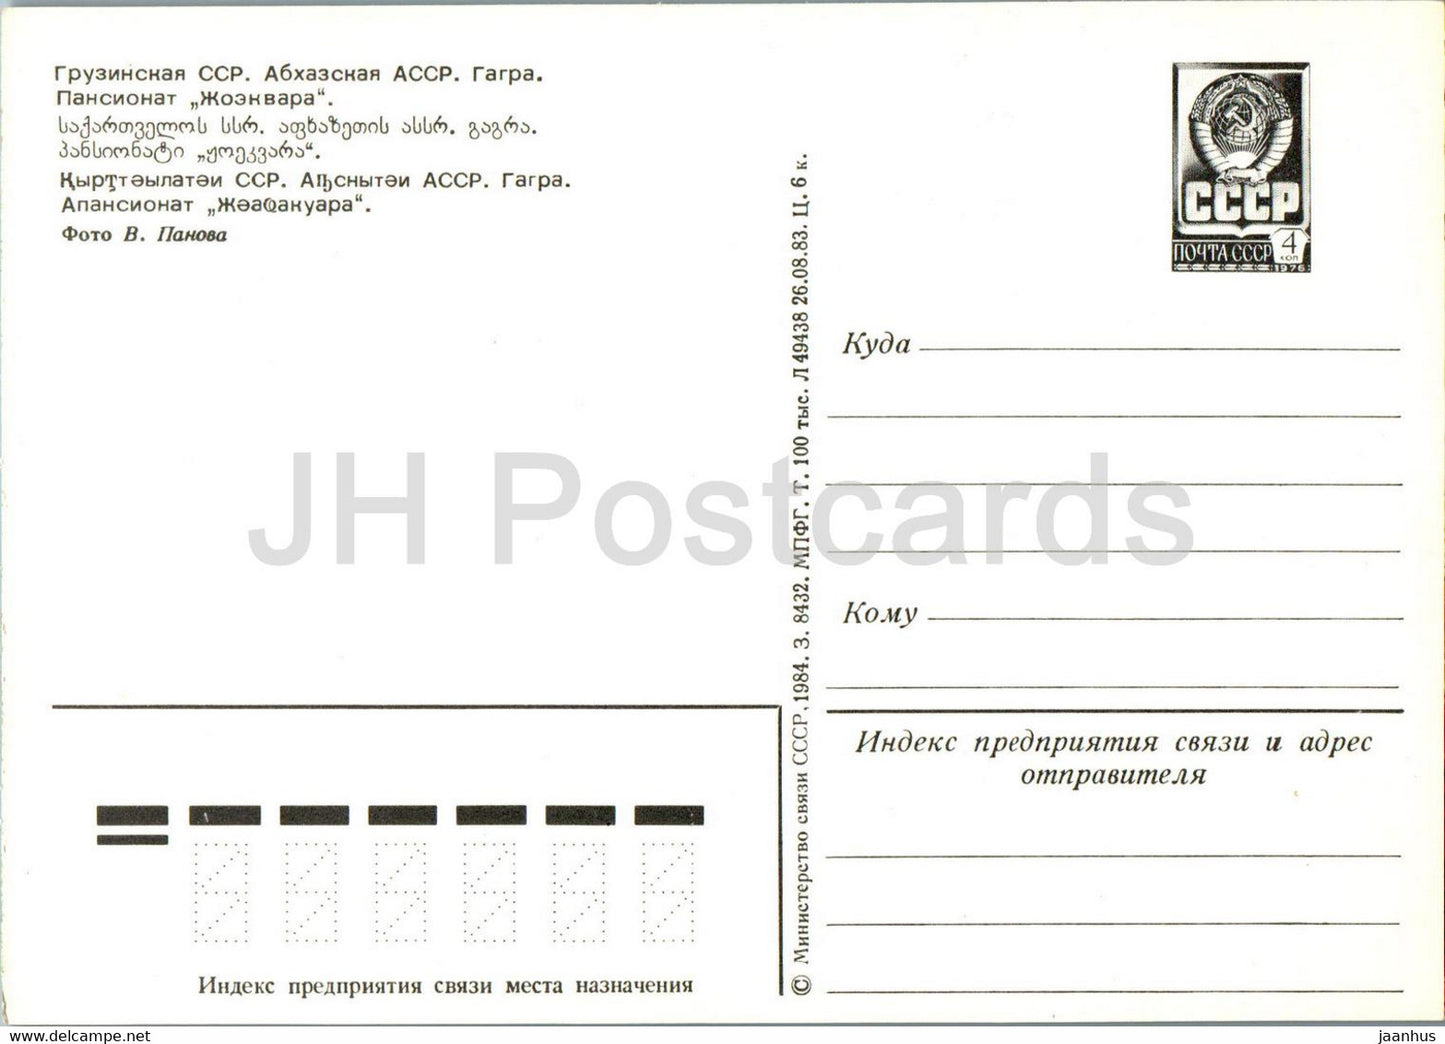 Gagra - pension home Zhoekvara - postal stationery - 1984 - Georgia USSR - unused